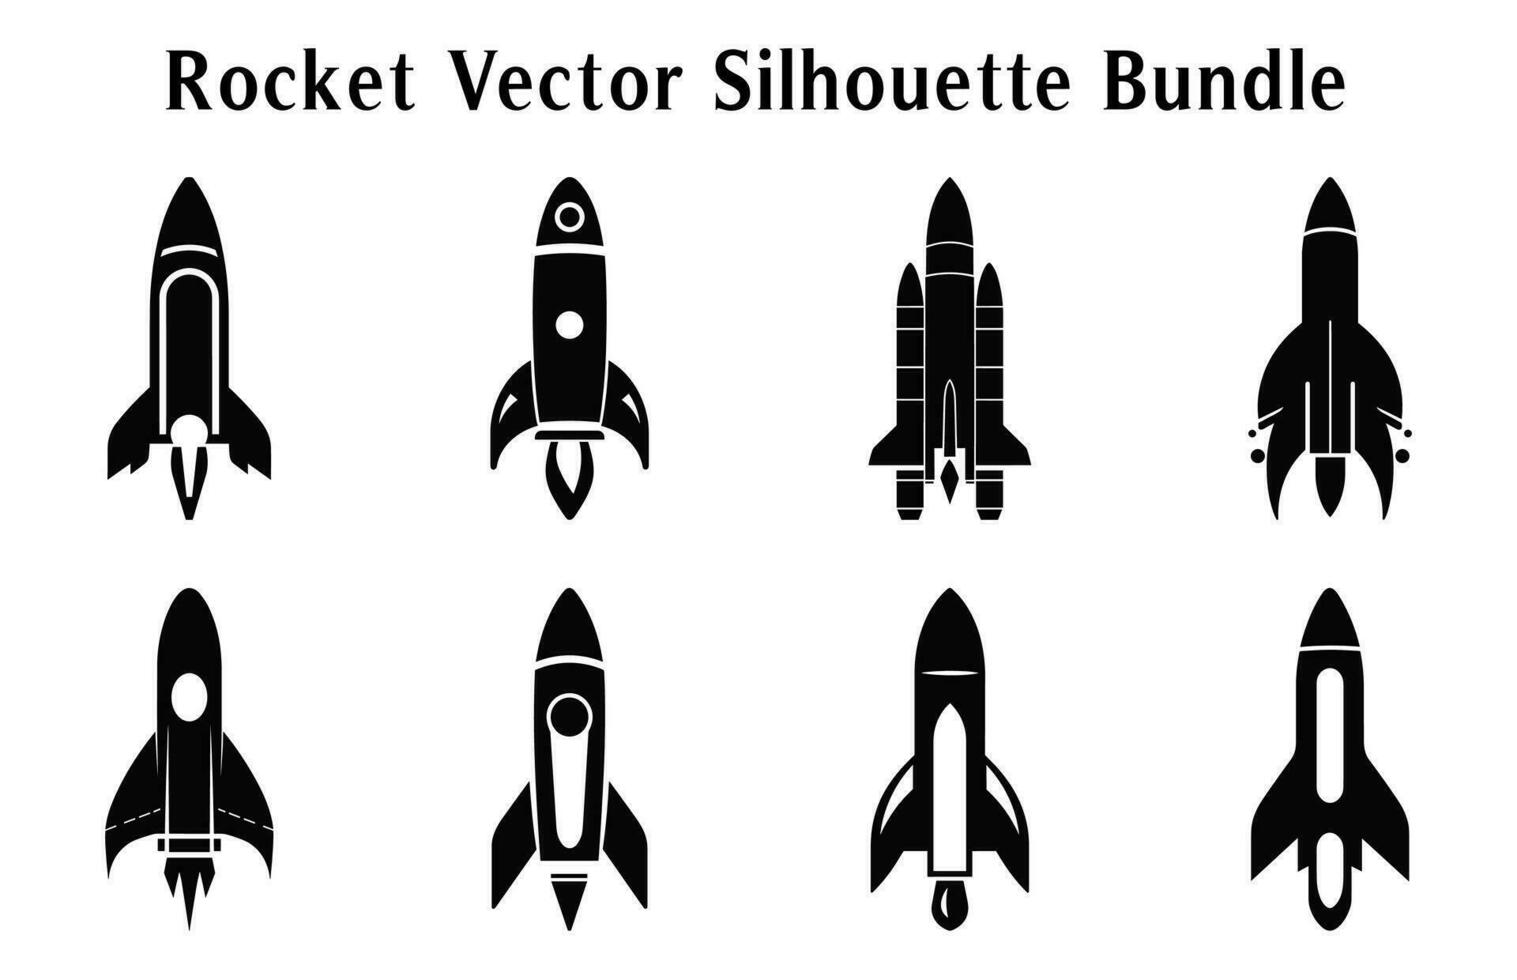 fusée silhouette clipart empaqueter, ensemble de fusée Icônes vecteur, lancement vaisseau spatial et vaisseau spatial silhouettes vecteur